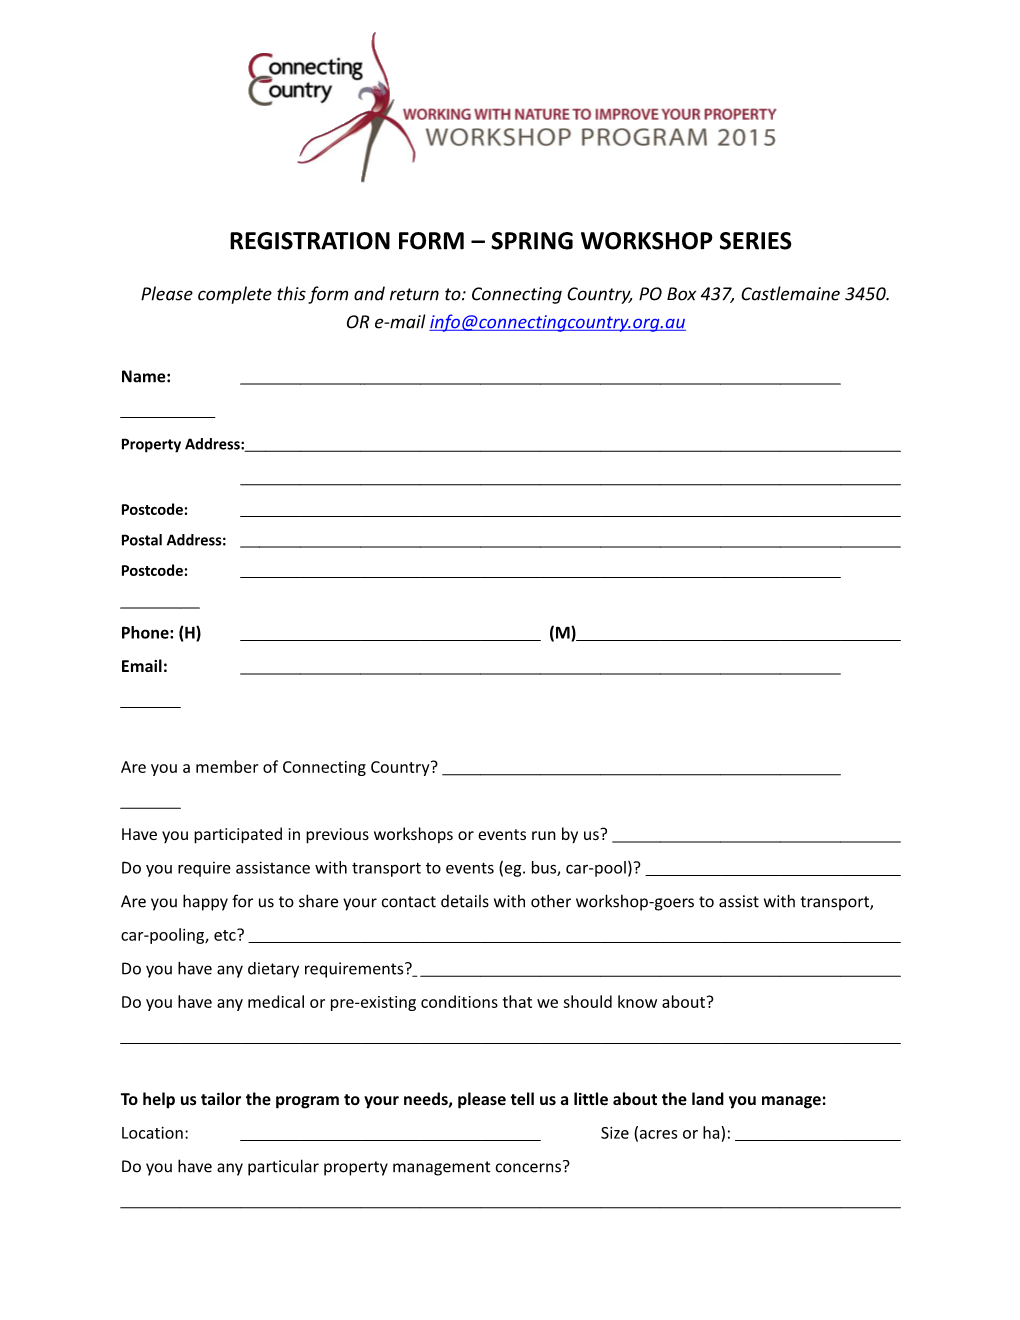 Registration Form Spring Workshop Series